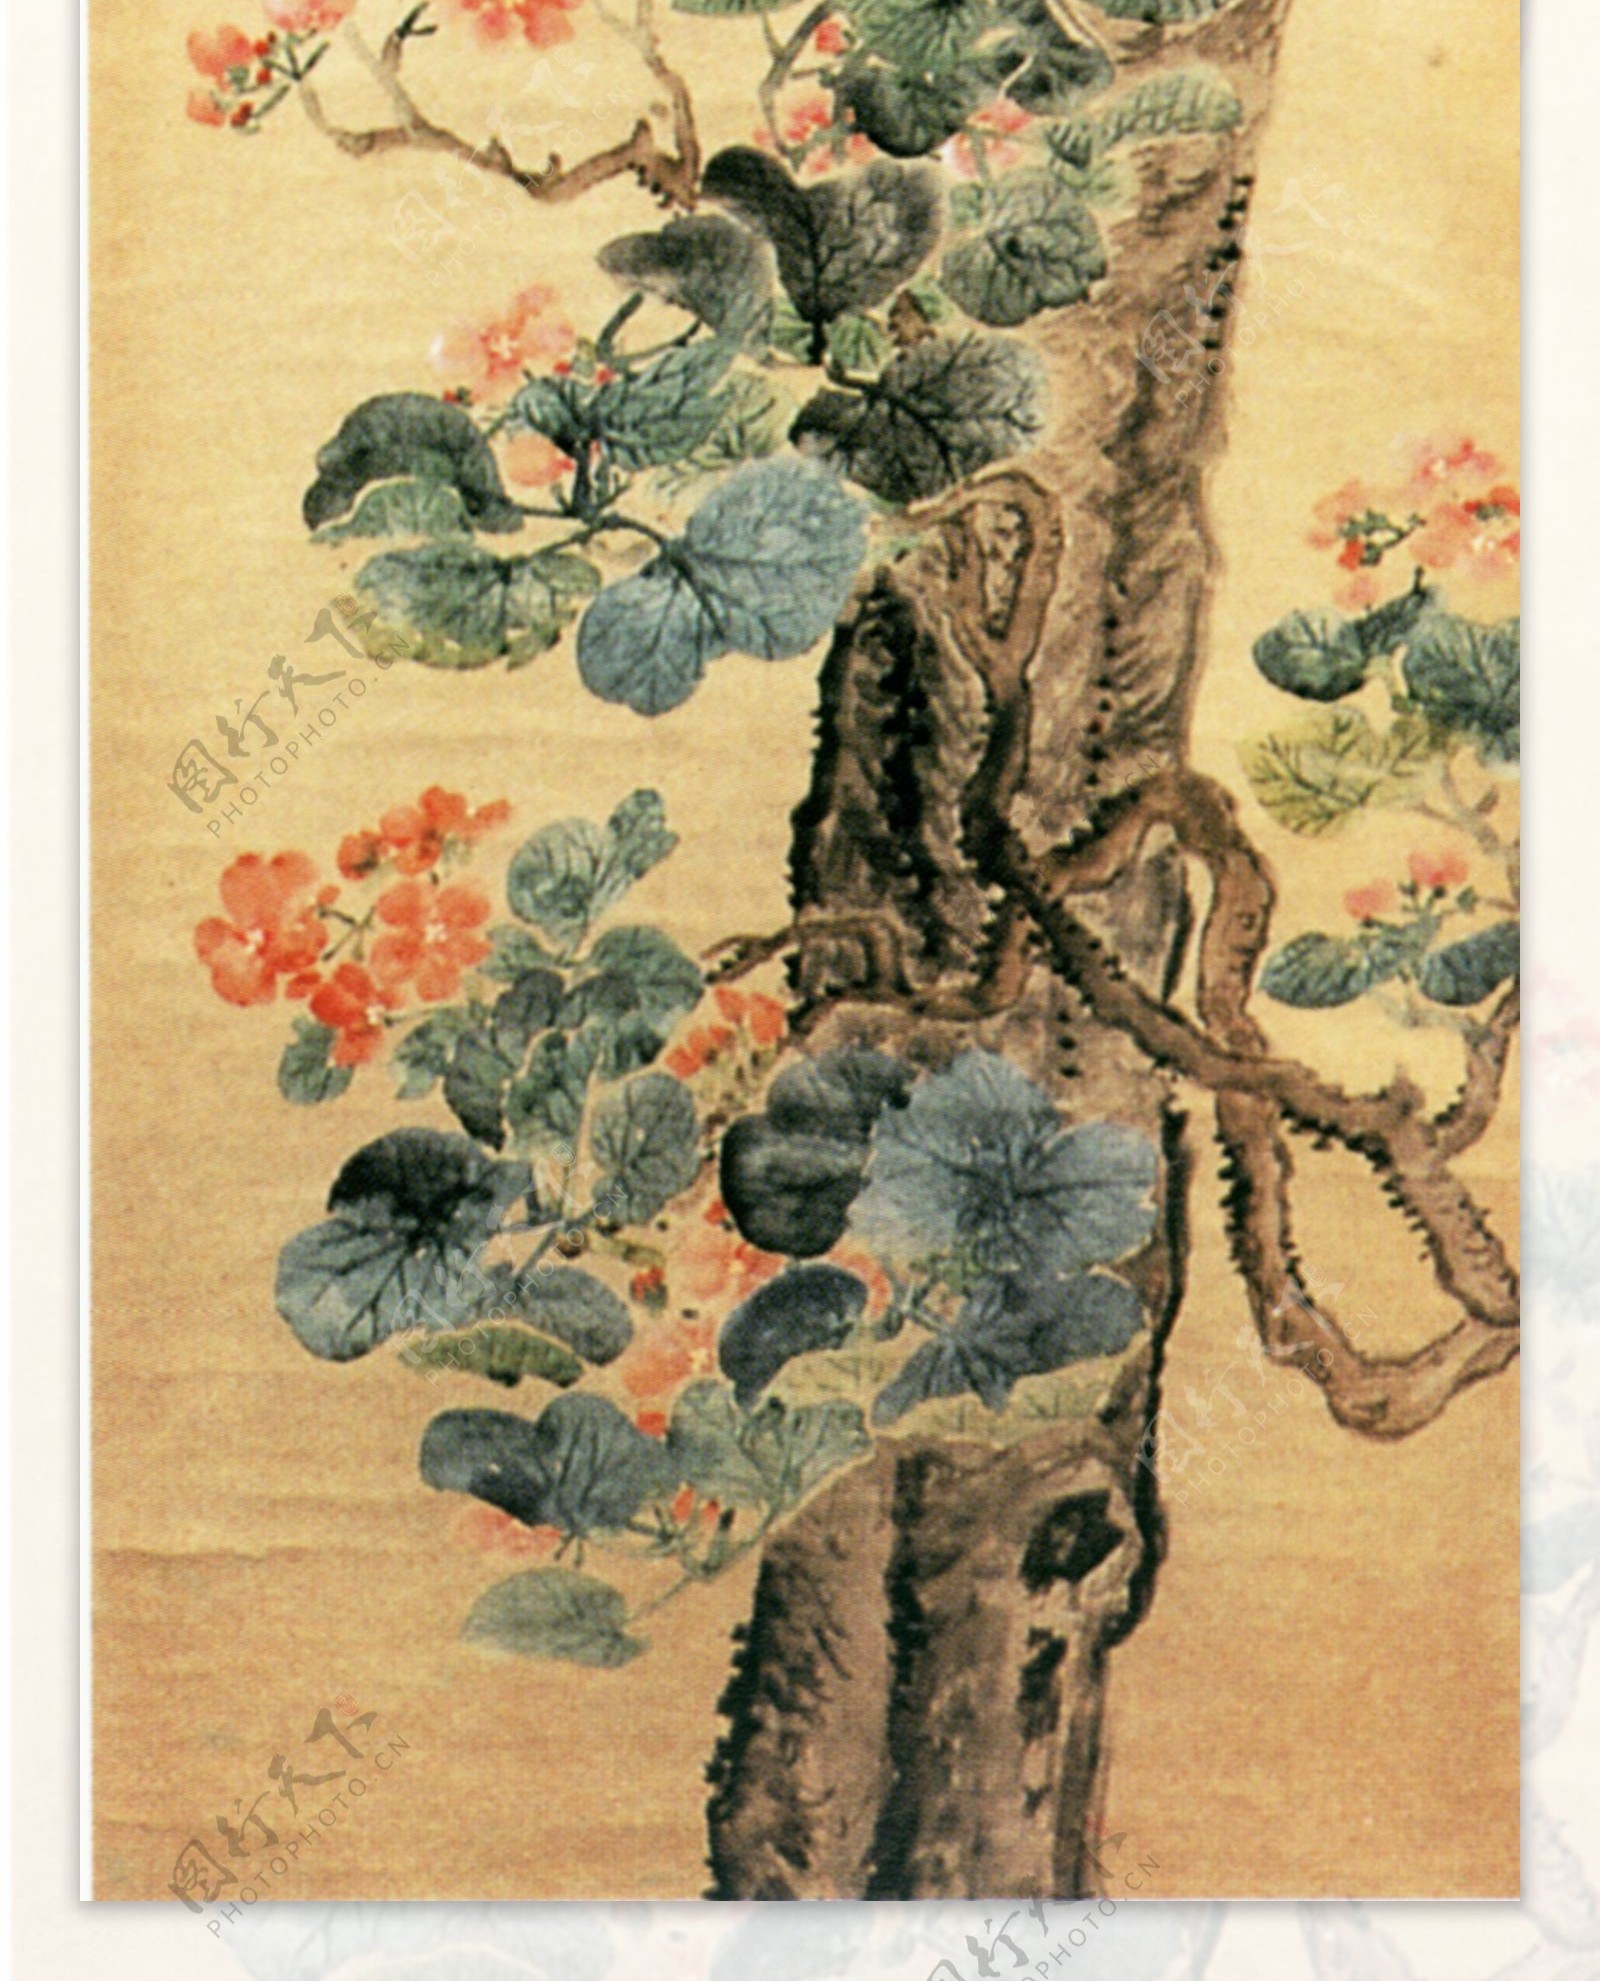 牡丹花竹子丹顶鹤白鹤梅花树枝柳絮飘絮杂草树干植物动物中国风中华艺术绘画